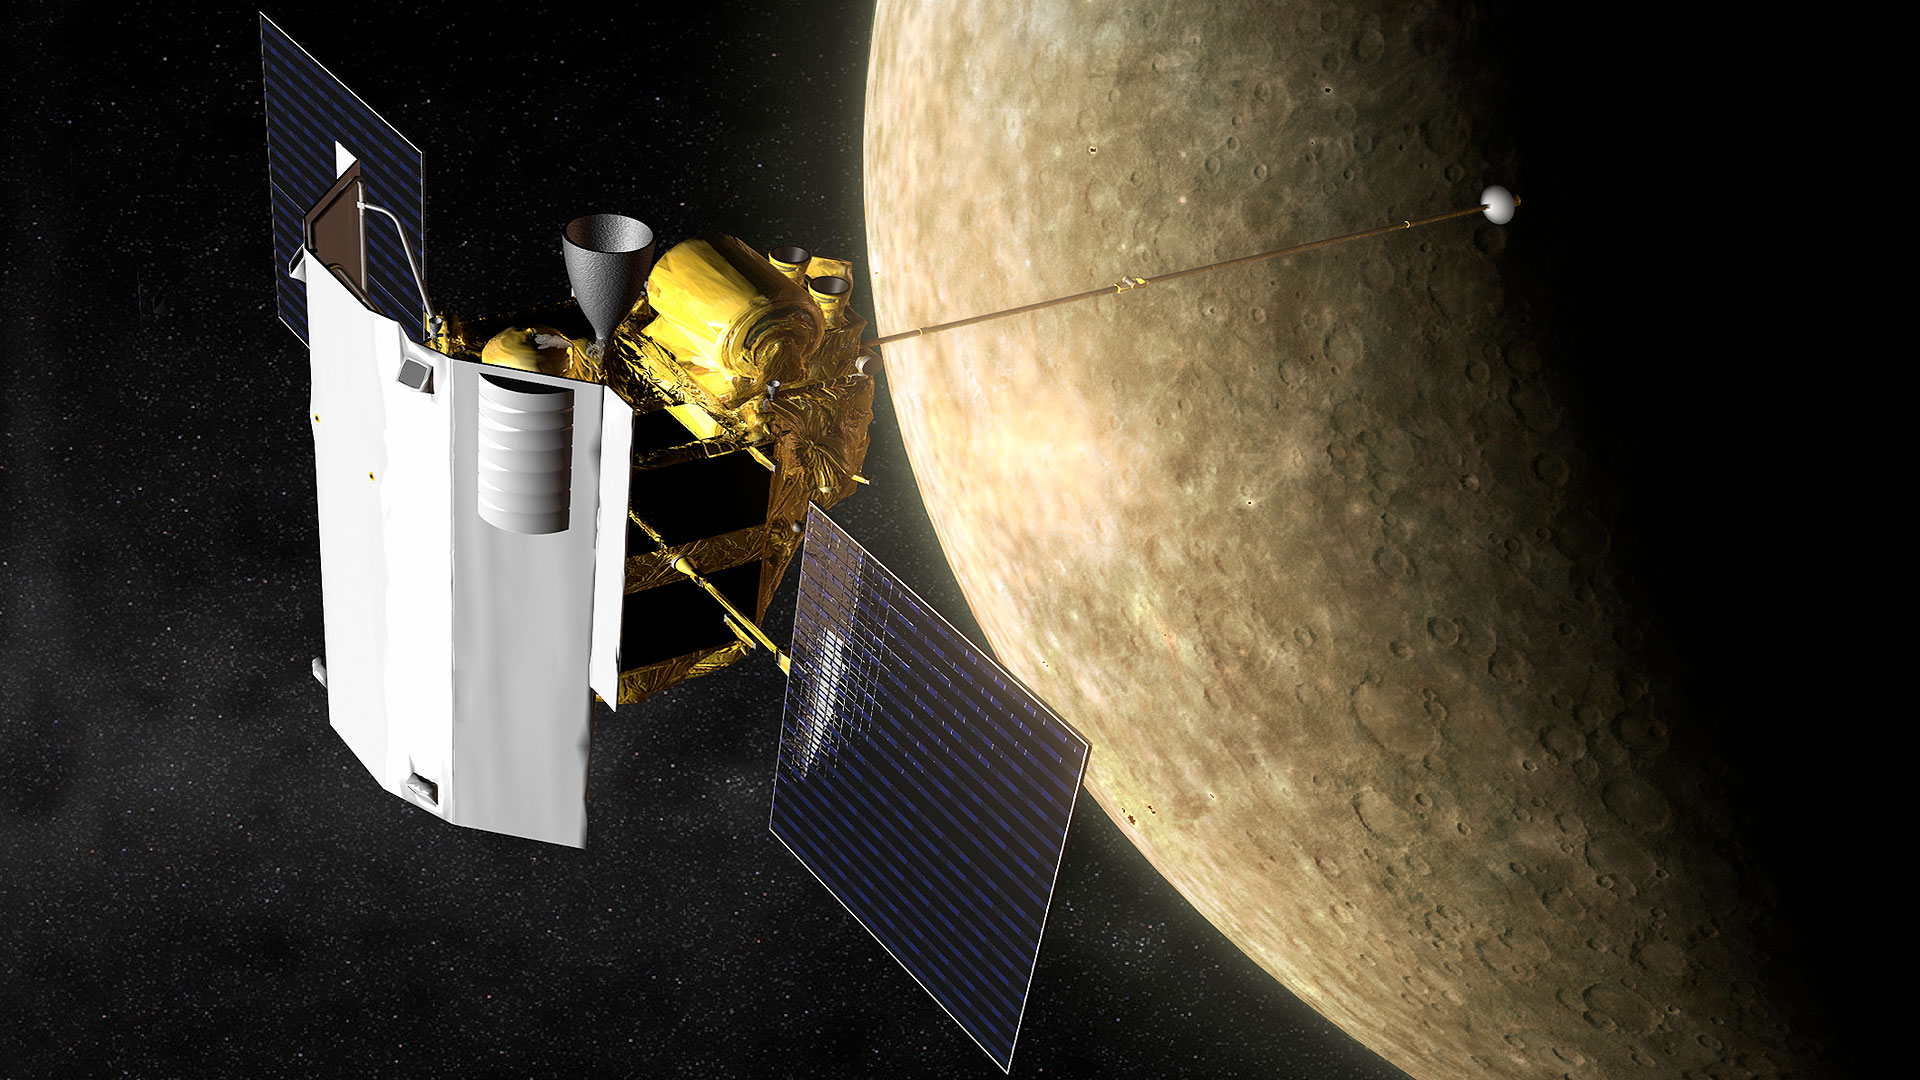 La sonde Messenger s’écrase sur Mercure après onze ans d’aventure